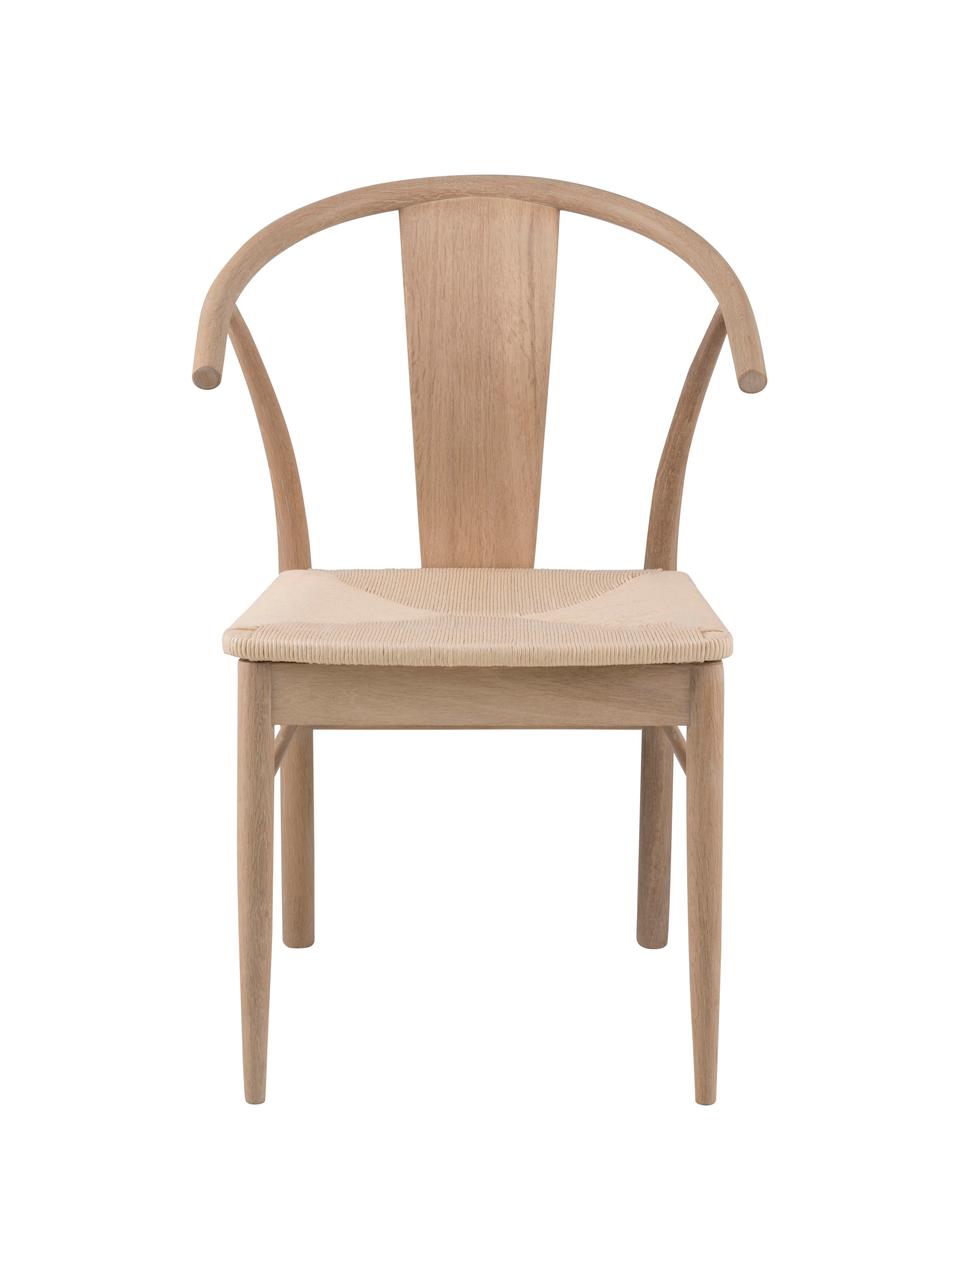 Holz-Armlehnstuhl Janik mit Binsengeflecht, Gestell: Eiche, weiß pigmentiert, Sitzfläche: Binsengeflecht, Eichenholz, B 54 x T 54 cm